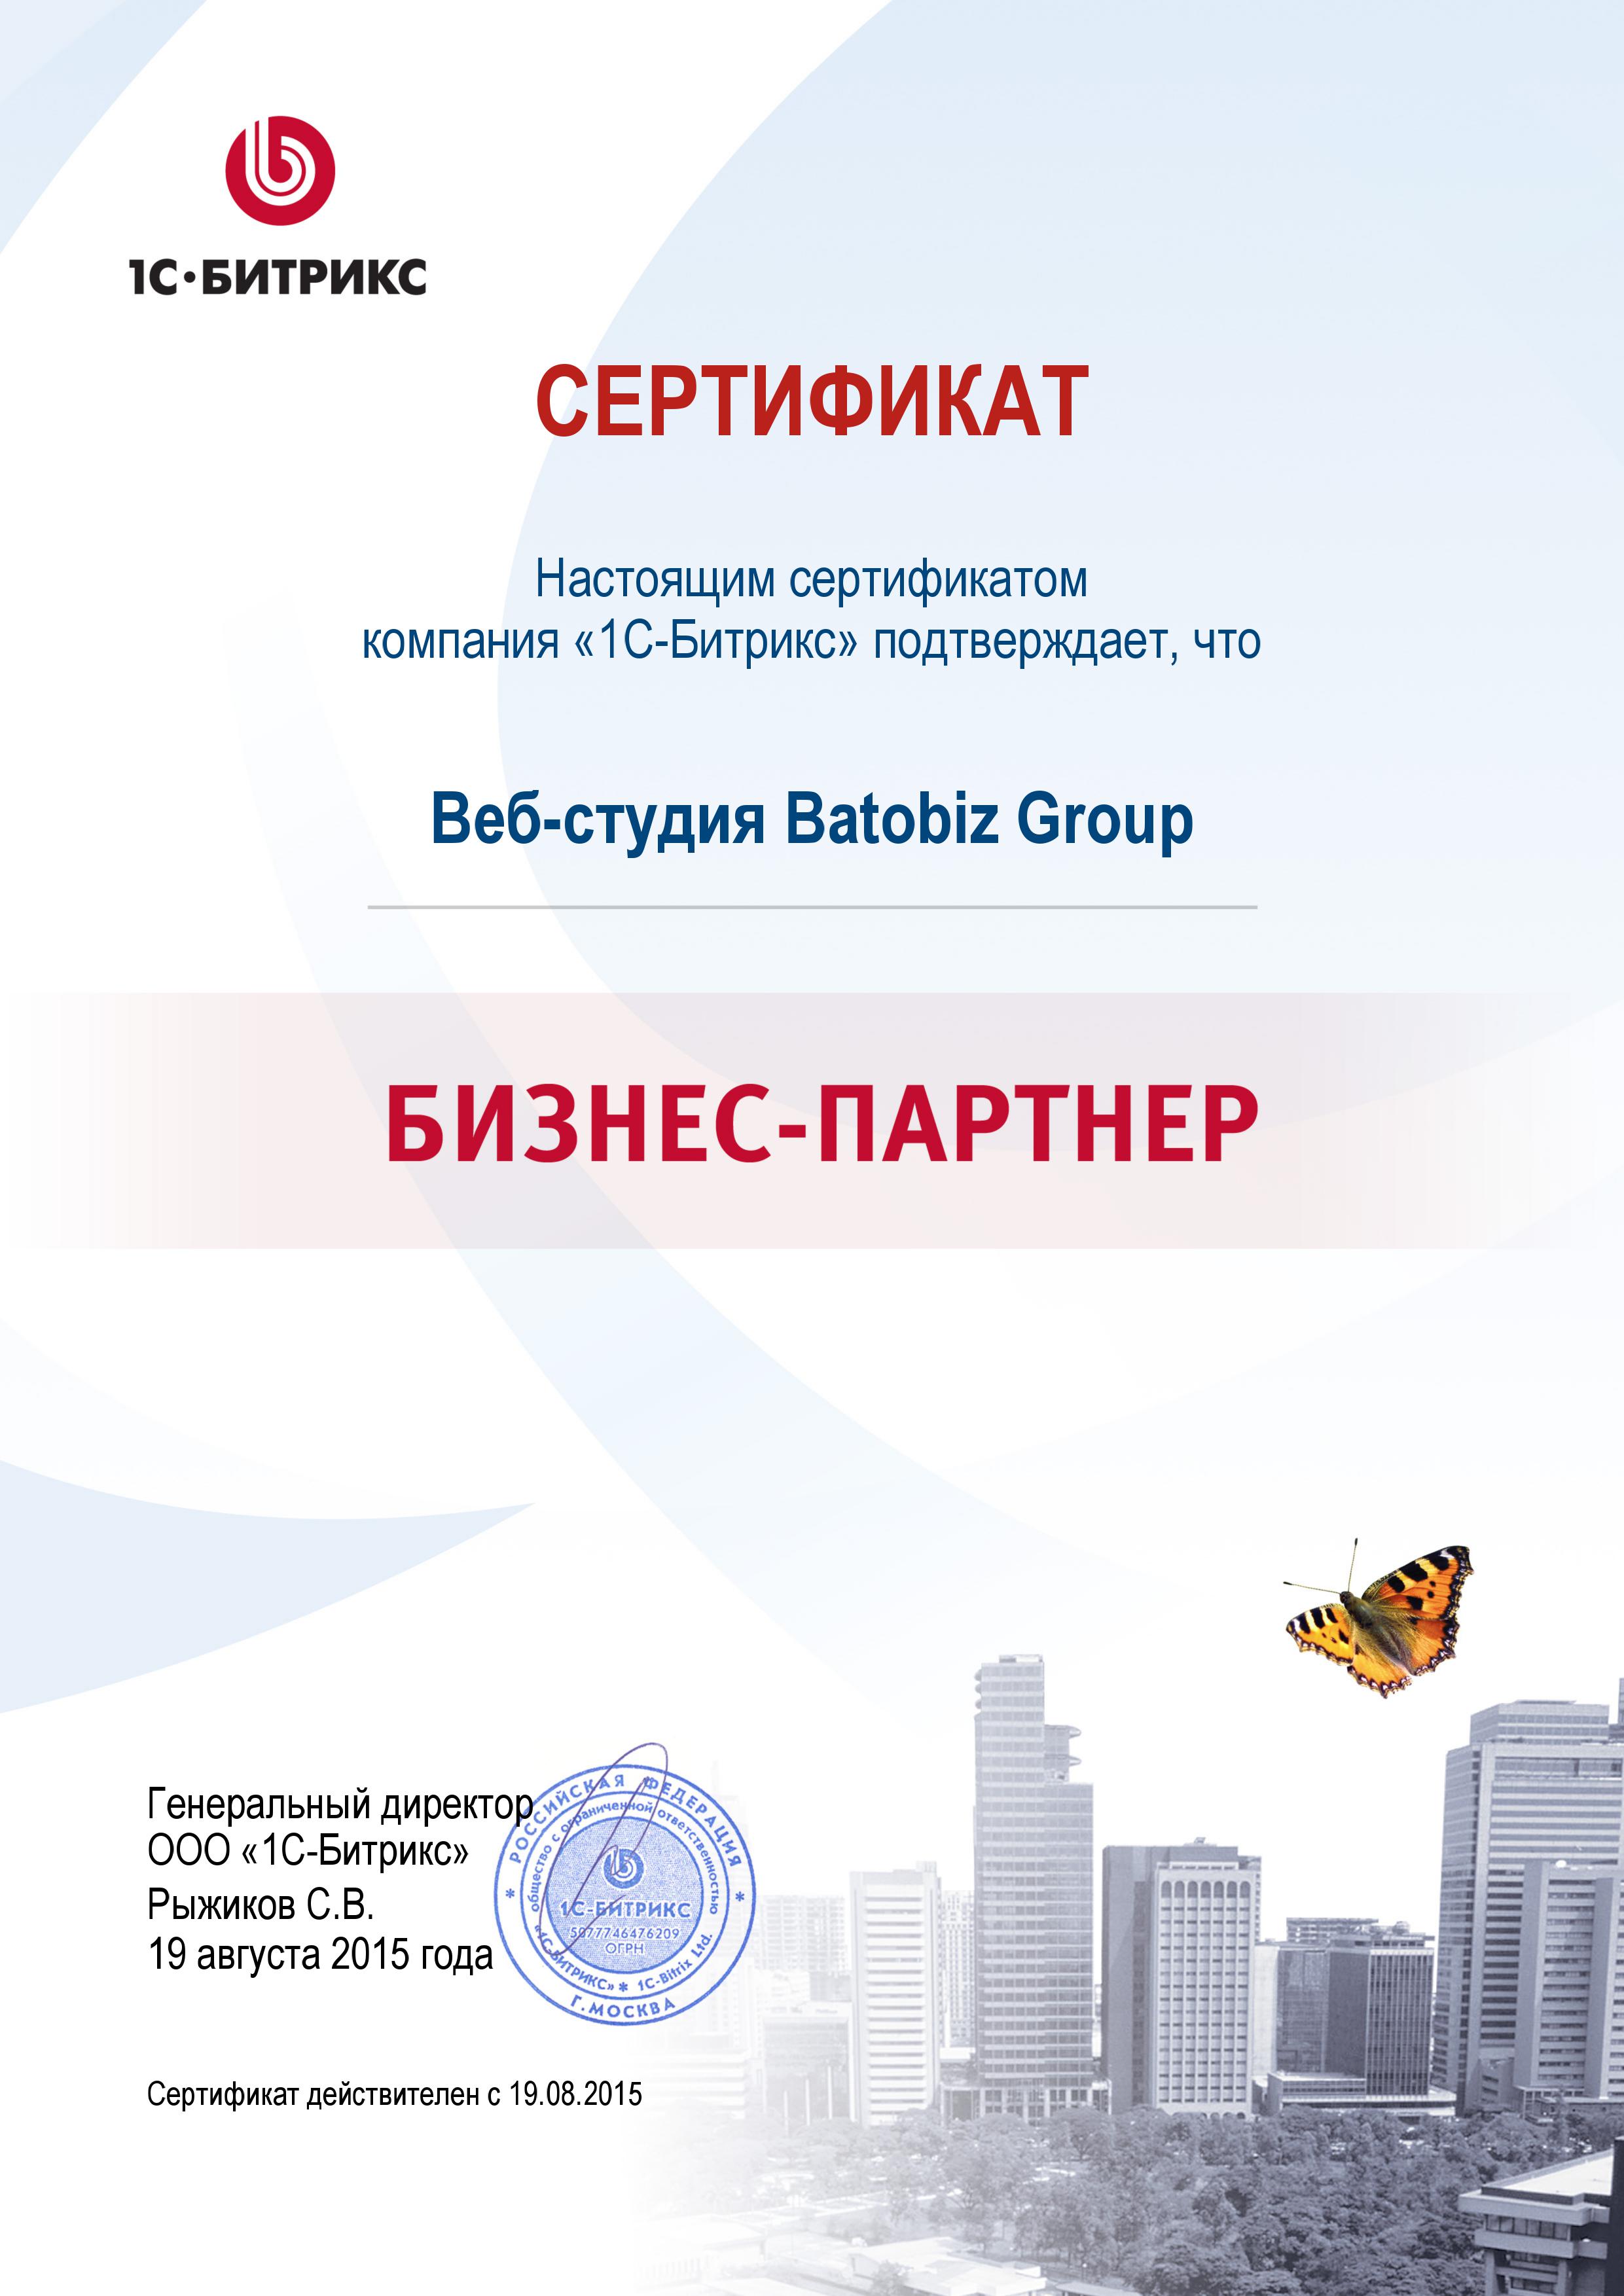 Сертификат студия Batobiz официальный бизнес-партнер 1С Битрикс